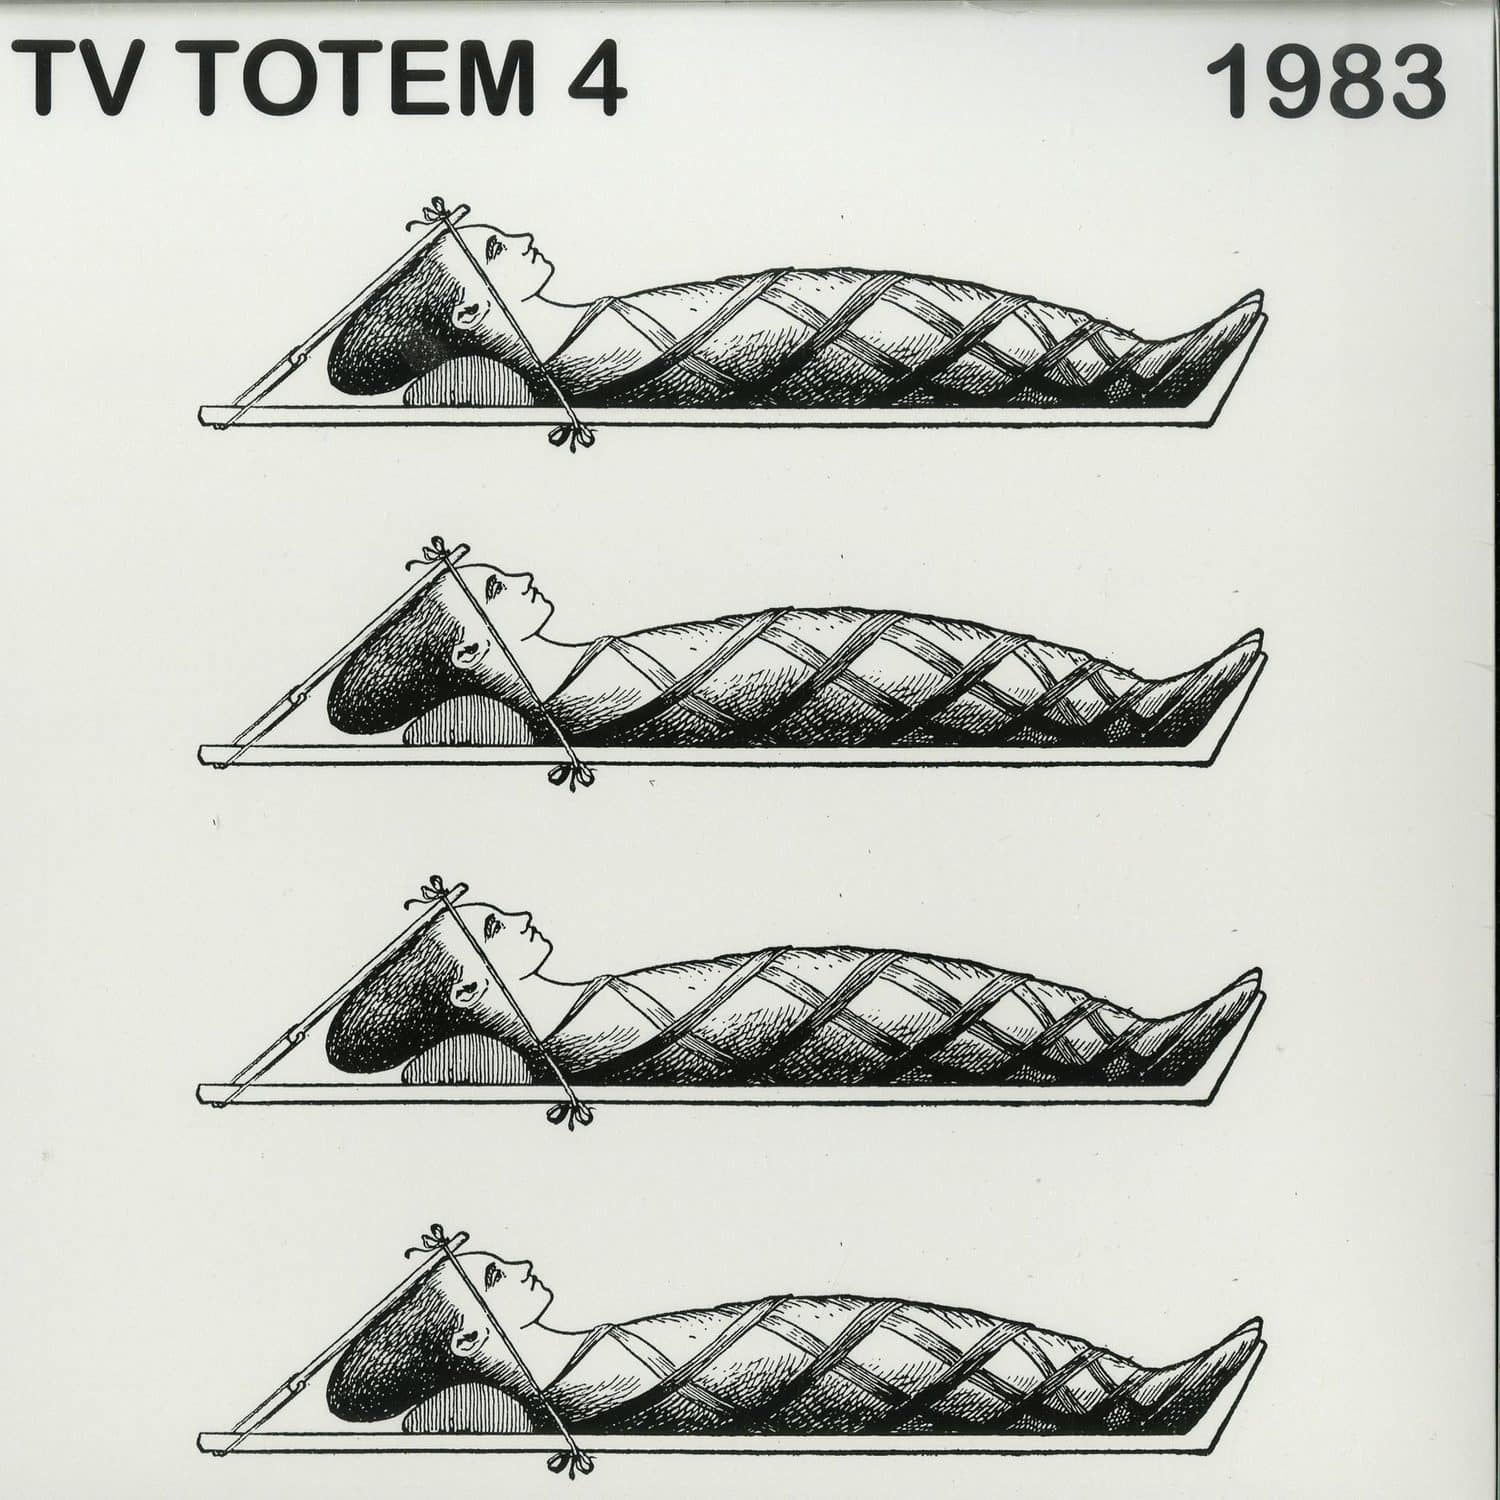 Tv Totem - TV TOTEM 4